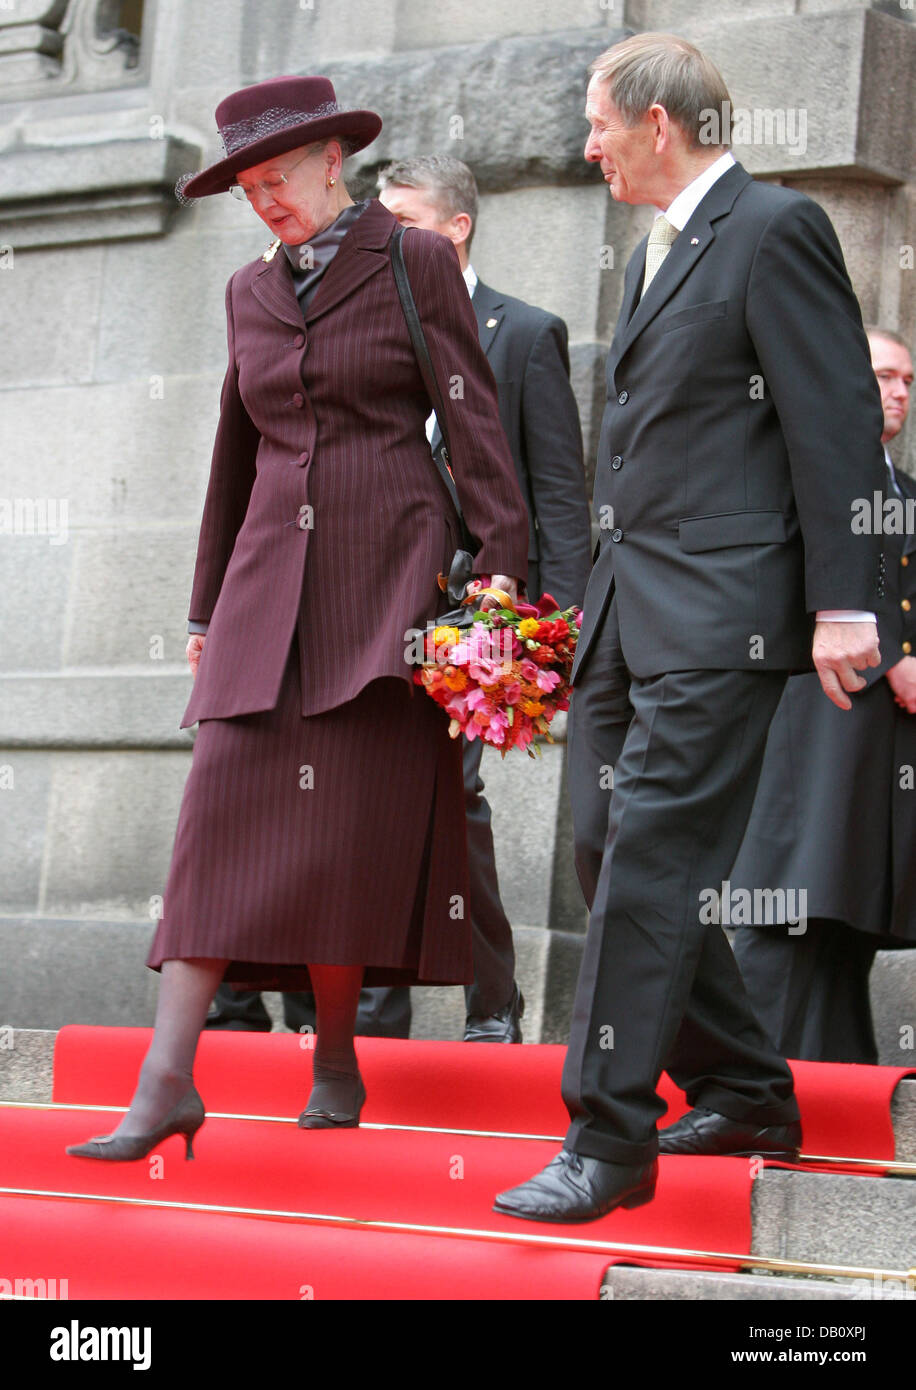 Königin Margrethe von Dänemark läuft hinunter die Schritte bei der traditionellen Eröffnung des dänischen Parlaments Saison am Schloss Christiansborg in Kopenhagen, Dänemark, 2. Oktober 2007. Foto: Albert Philip van der Werf (Niederlande) Stockfoto